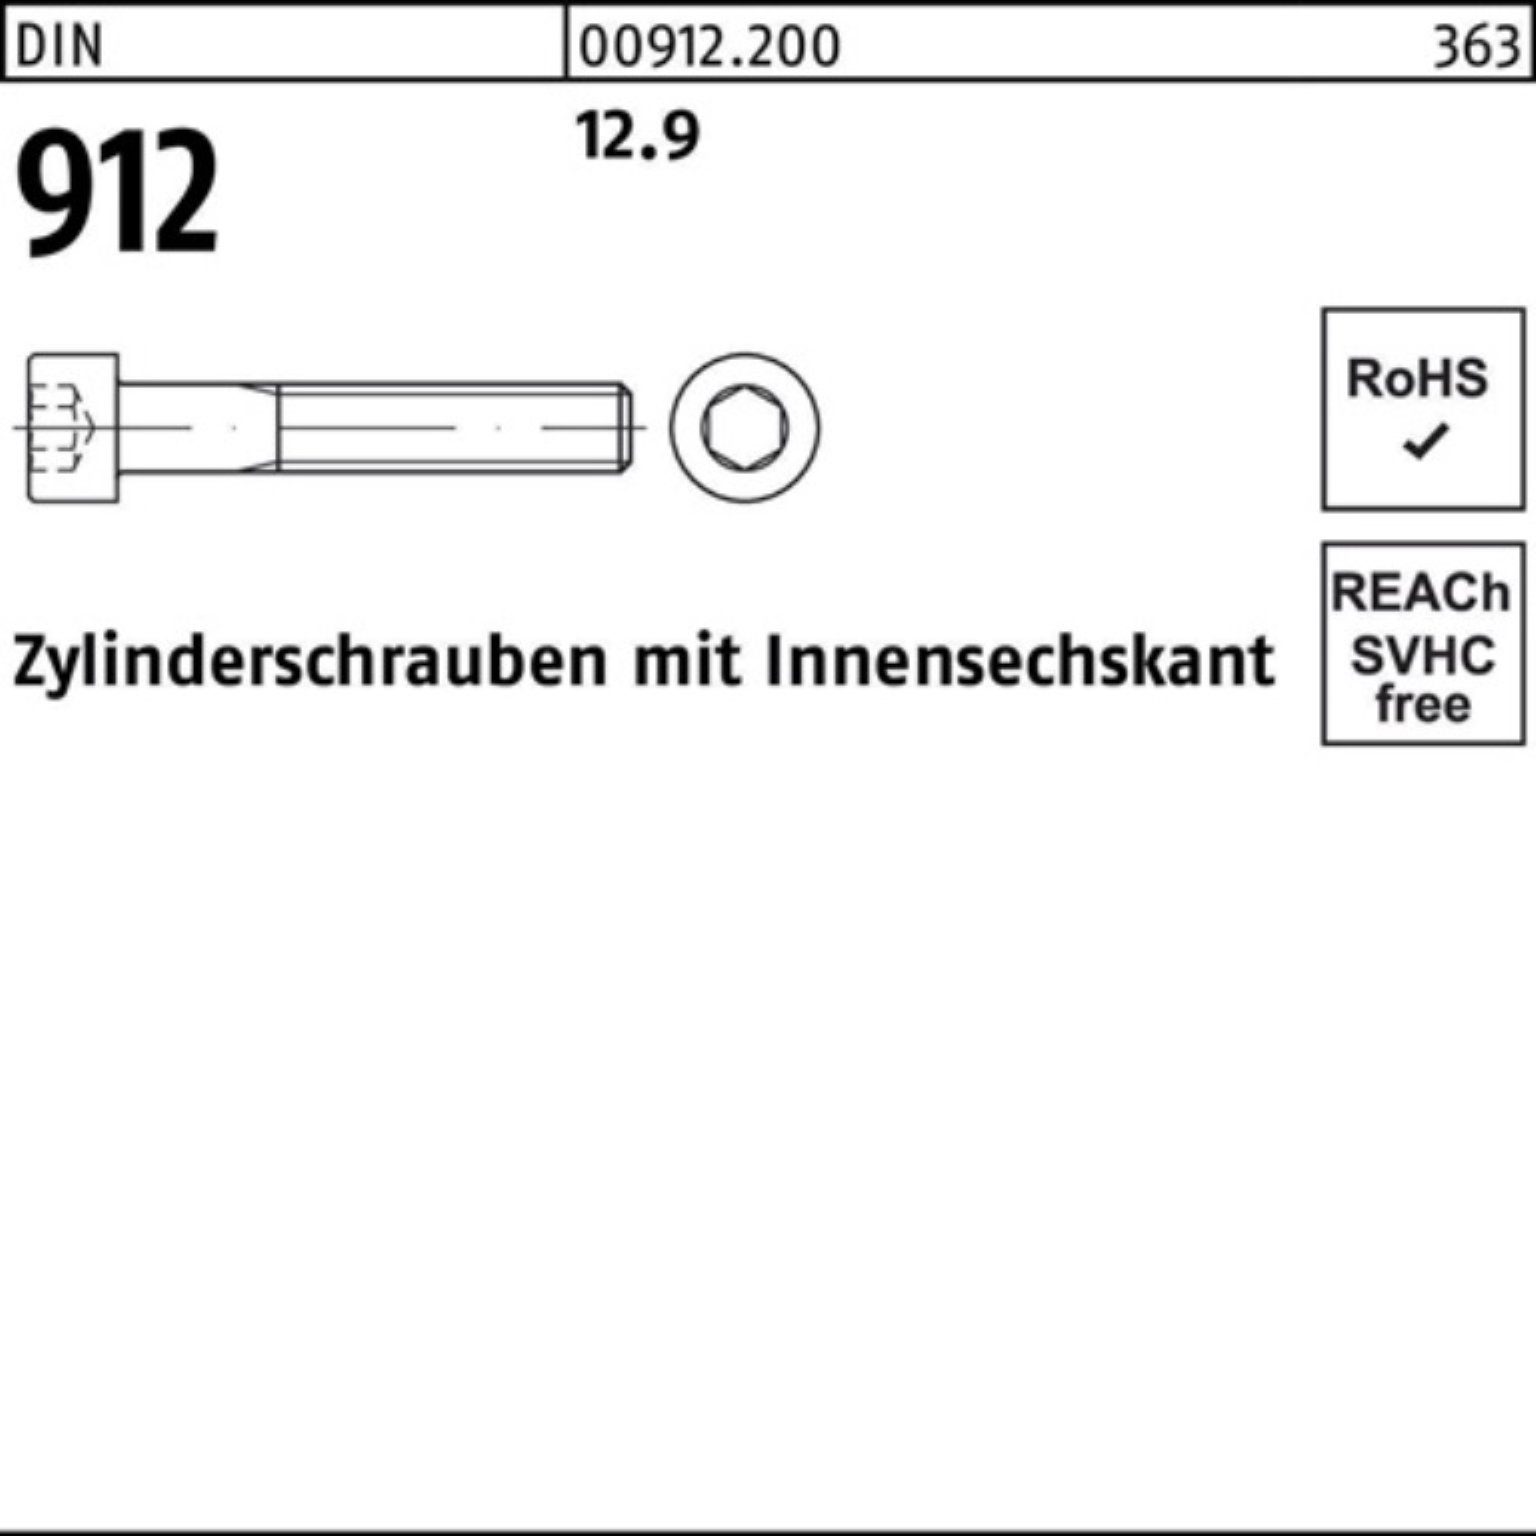 Zylinderschraube 912 280 DIN 12.9 1 Reyher Innen-6kt Pack D 100er Stück Zylinderschraube M36x